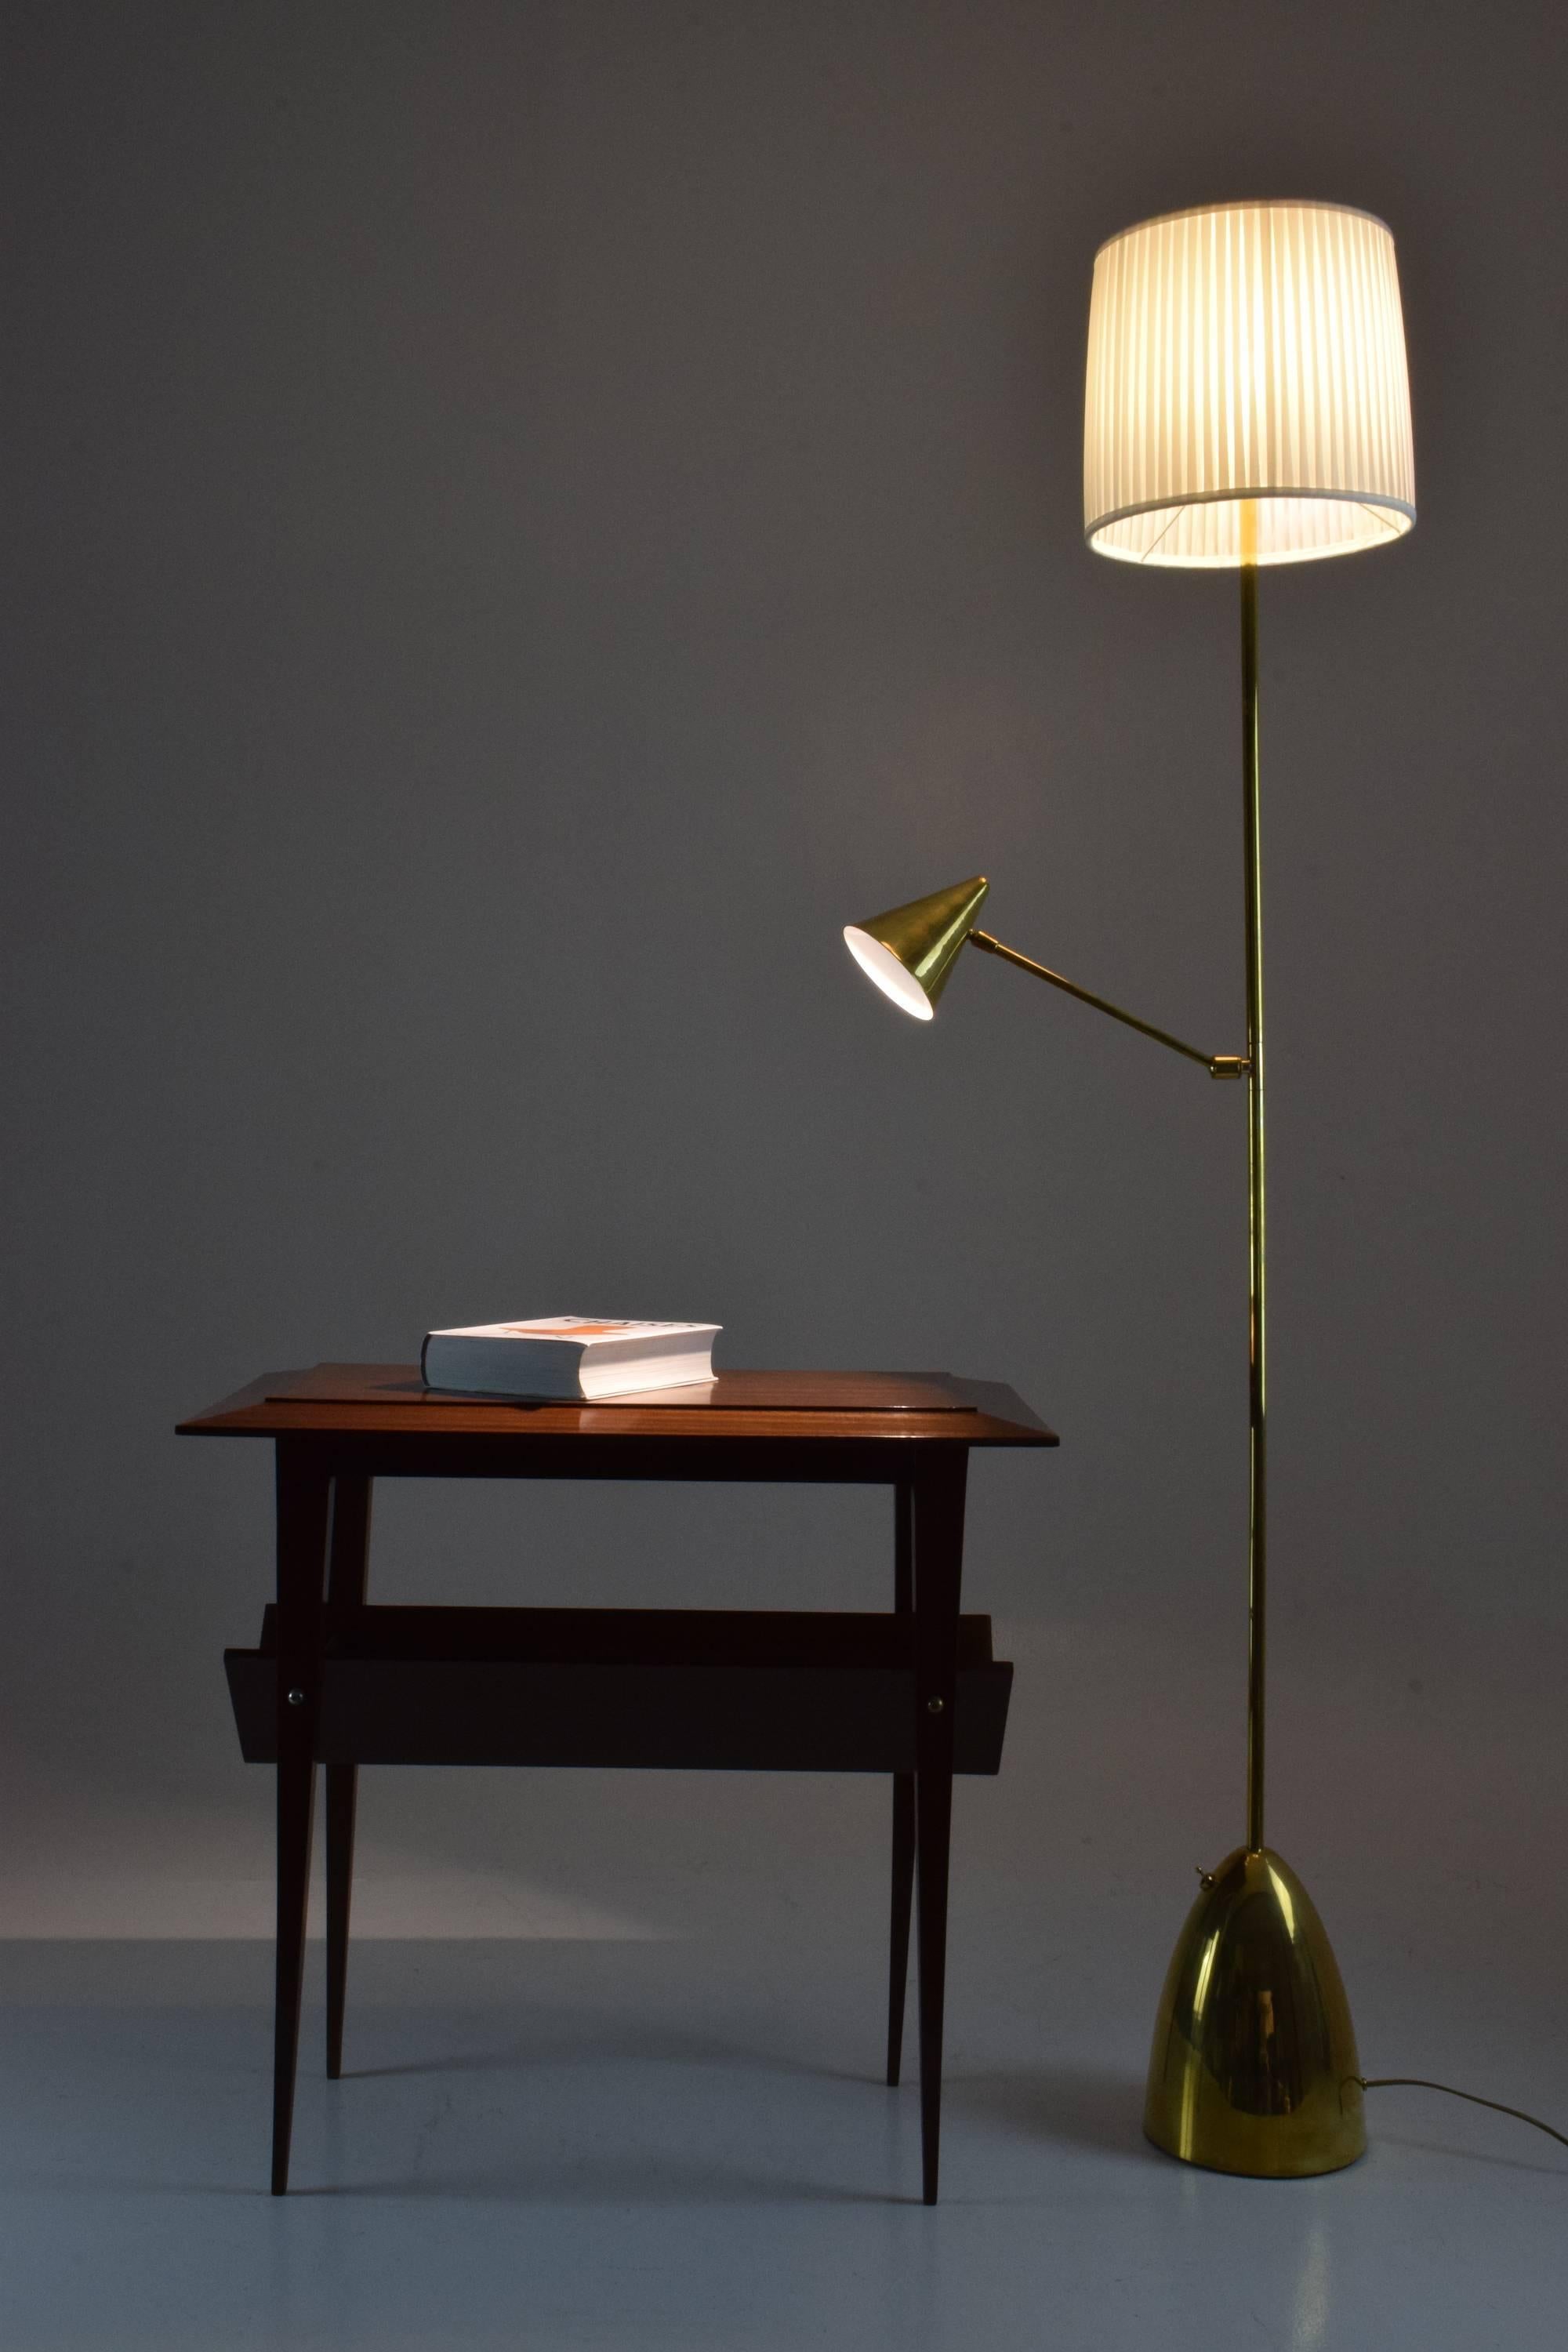 Un lampadaire conçu avec une liseuse placée à mi-longueur qui articule un abat-jour conique en laiton afin que vous puissiez diriger la lumière avec facilité. Les deux systèmes d'éclairage fonctionnent de manière indépendante, ce qui en fait un